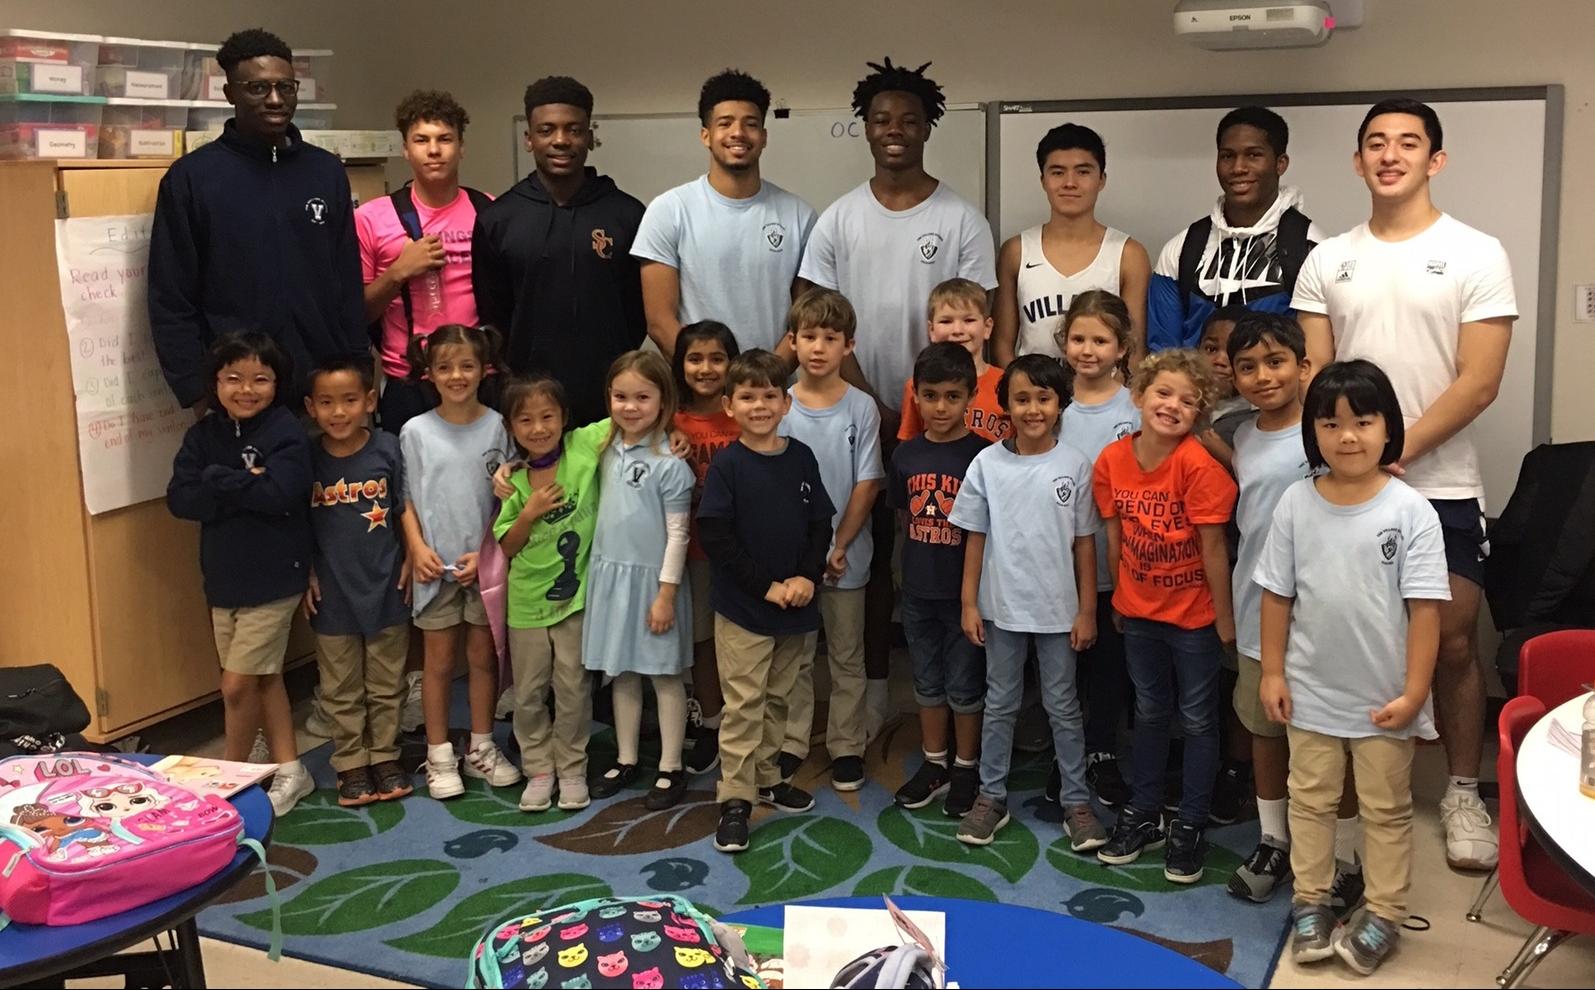 The Boy’s Basketball Team Starts Little Vikings Basketball Reading Program